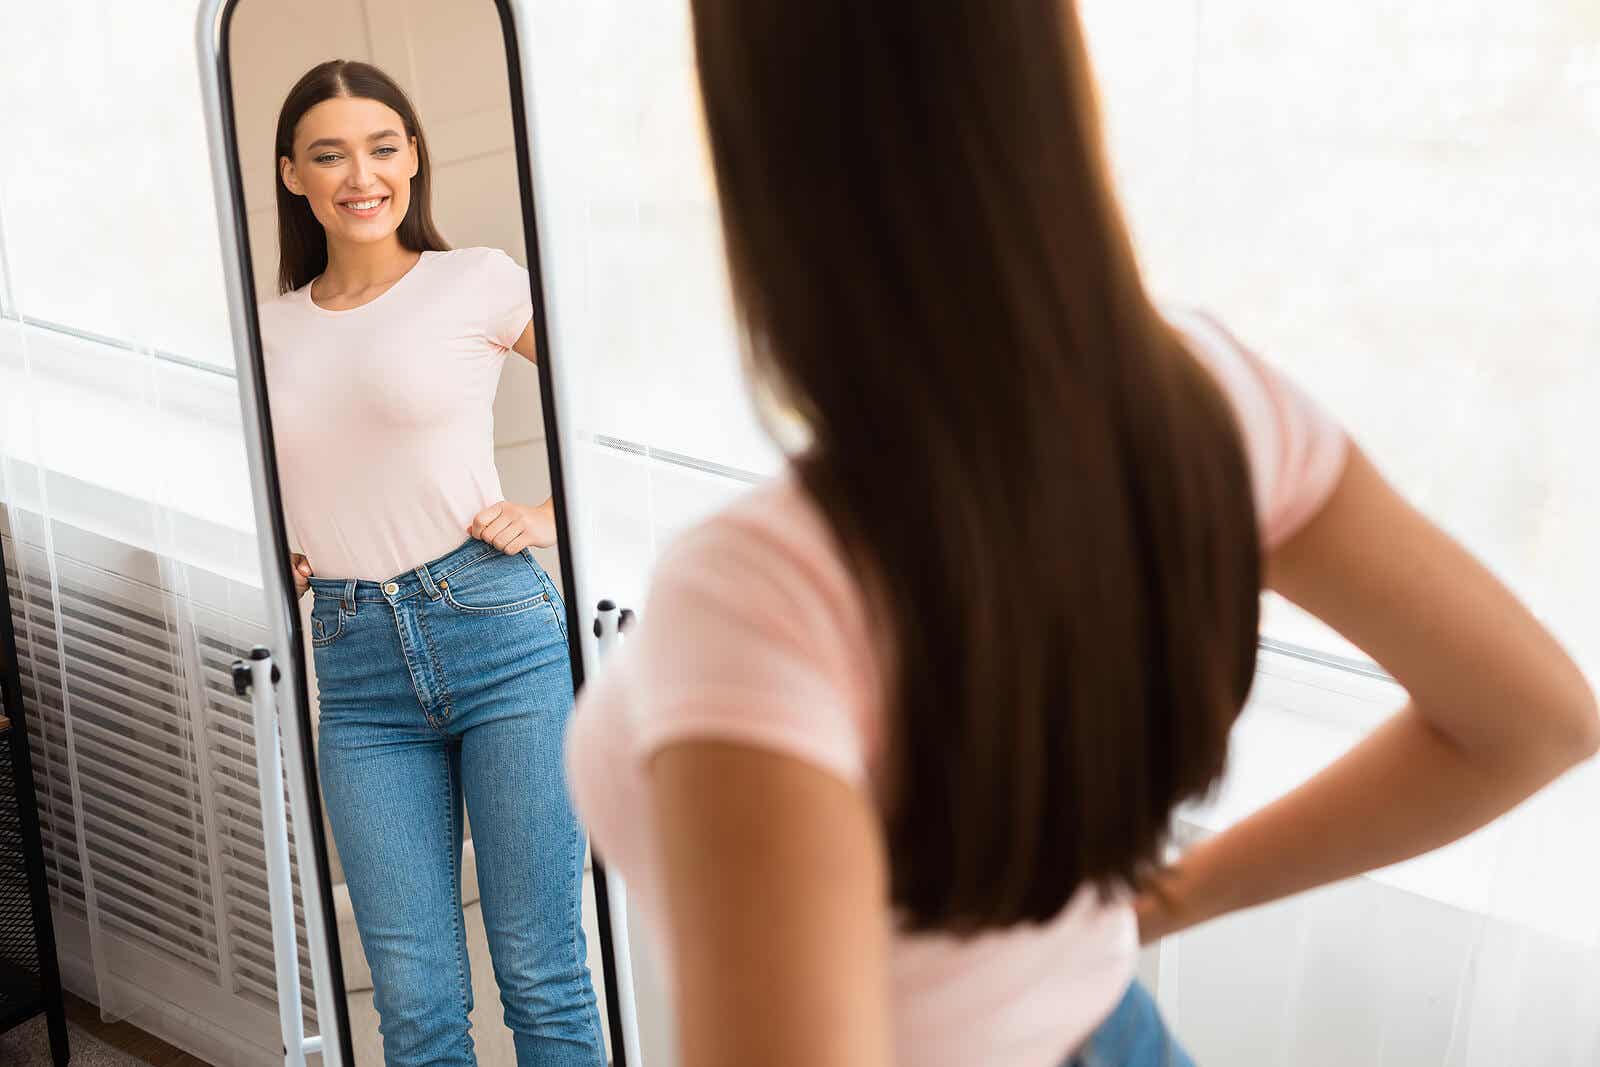 En smilende jente mens hun ser seg selv i speilet.